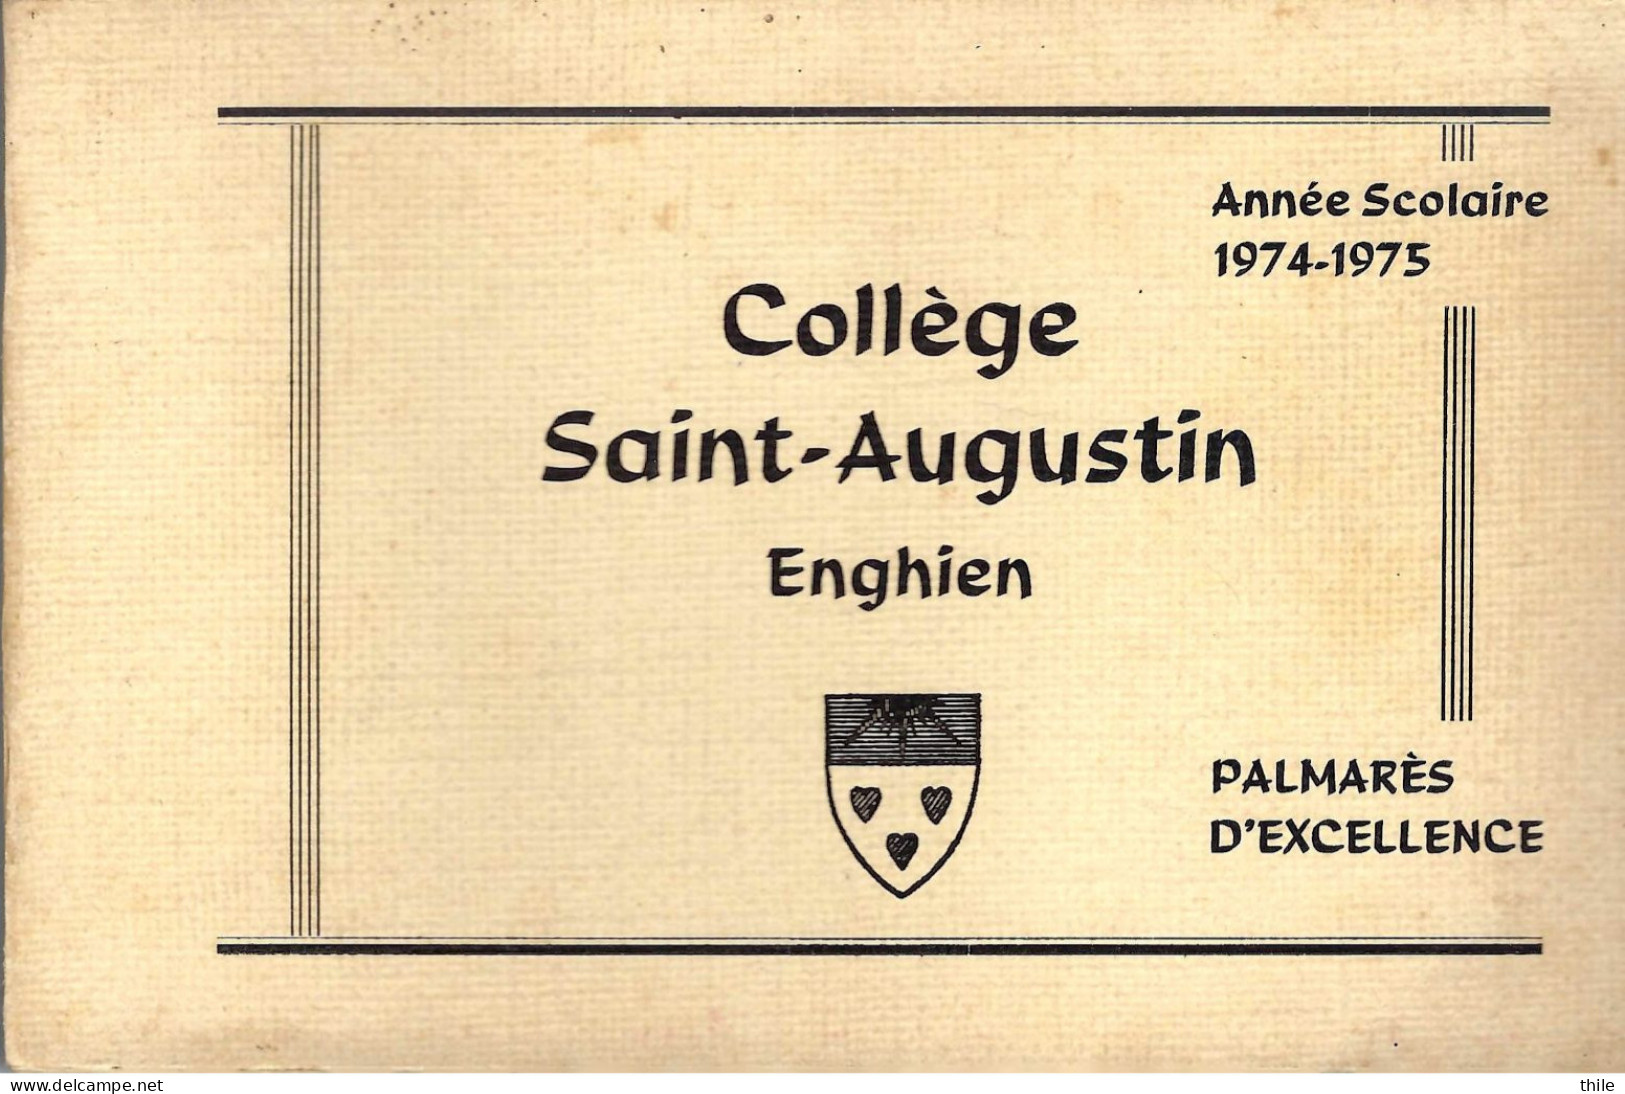 ENGHIEN - Collège Saint-Augustin - Palmarès D'excellence - Année Scolaire 1974-1975 - Diplômes & Bulletins Scolaires